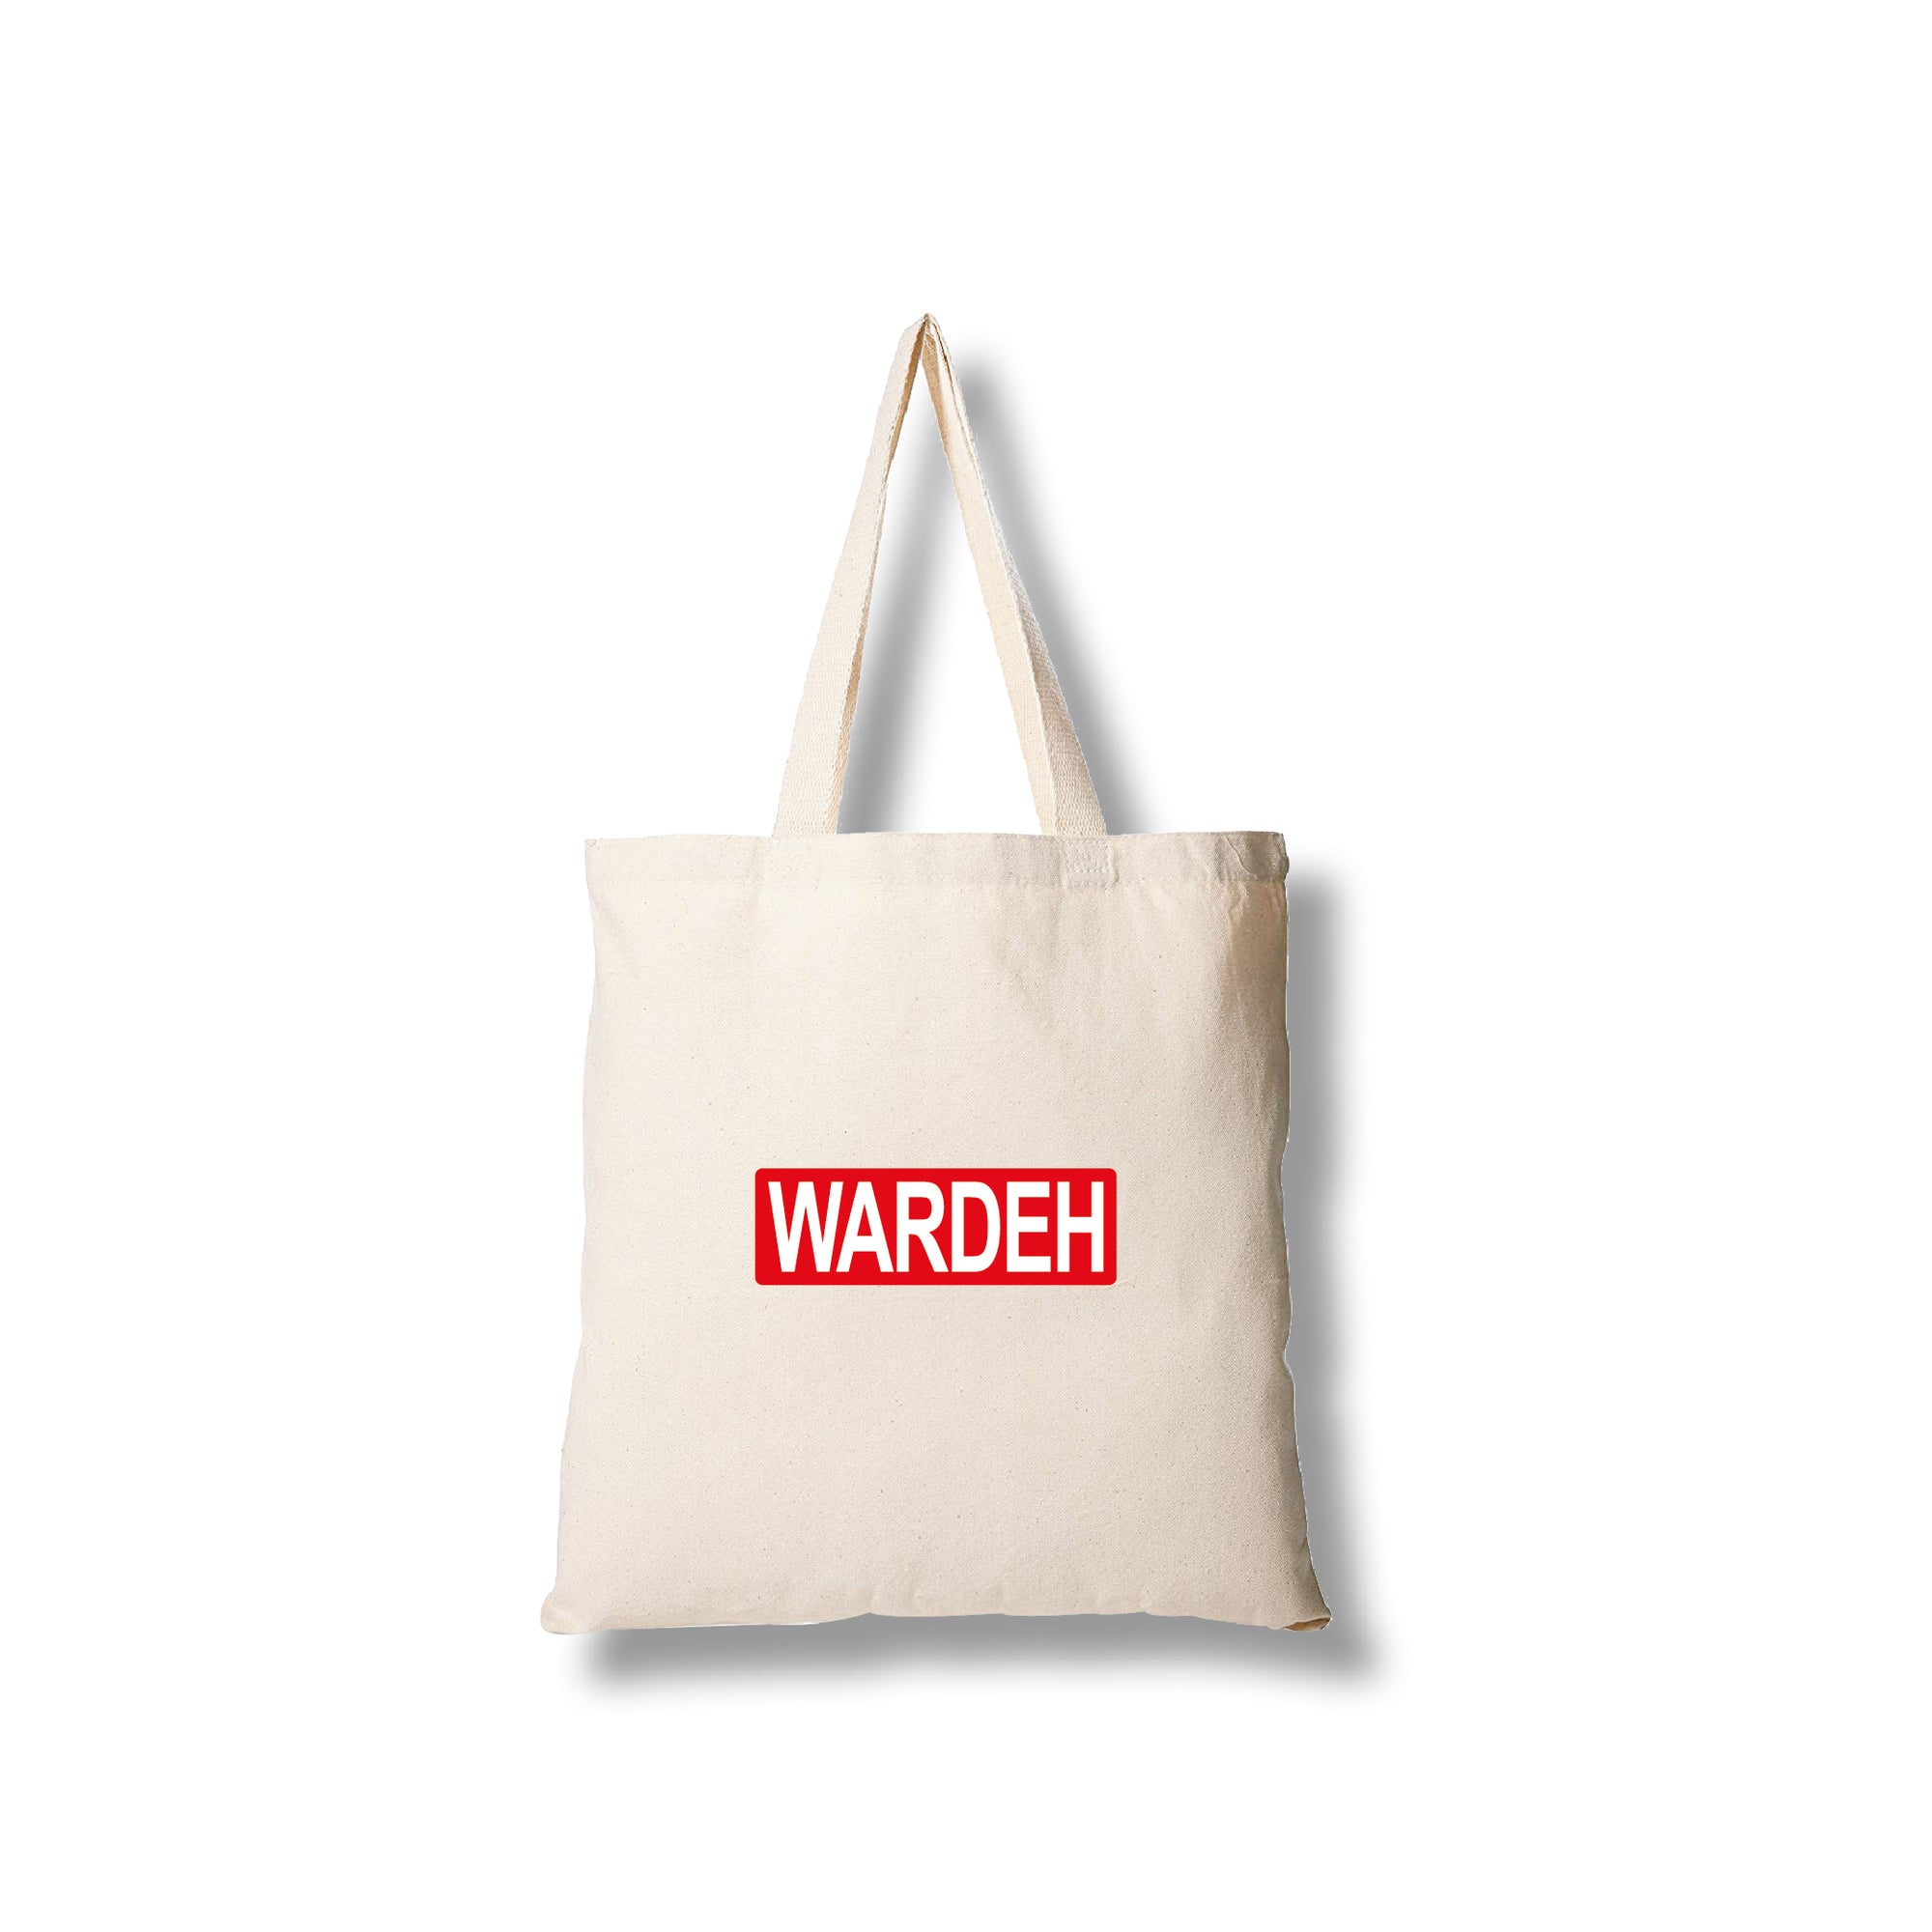 Tote bag - Wardeh